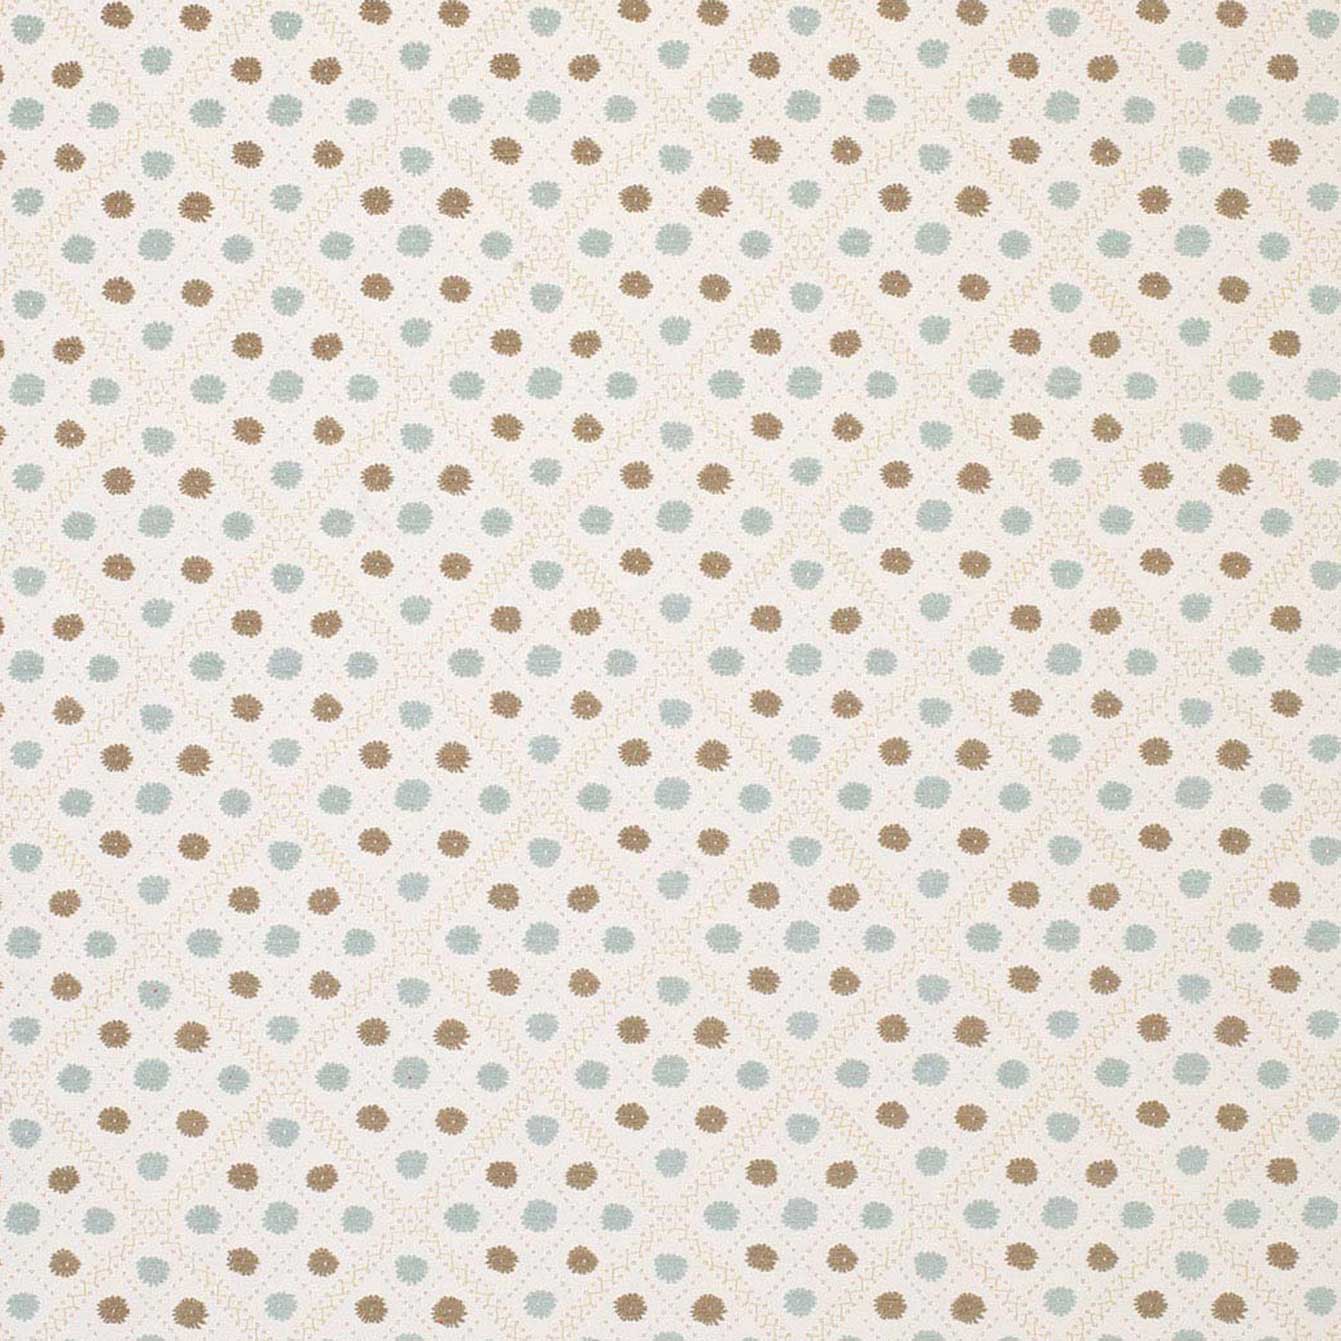 Nina Campbell Fabric - Claribel Claribel Ivory/Aqua/Beige NCF4281-03